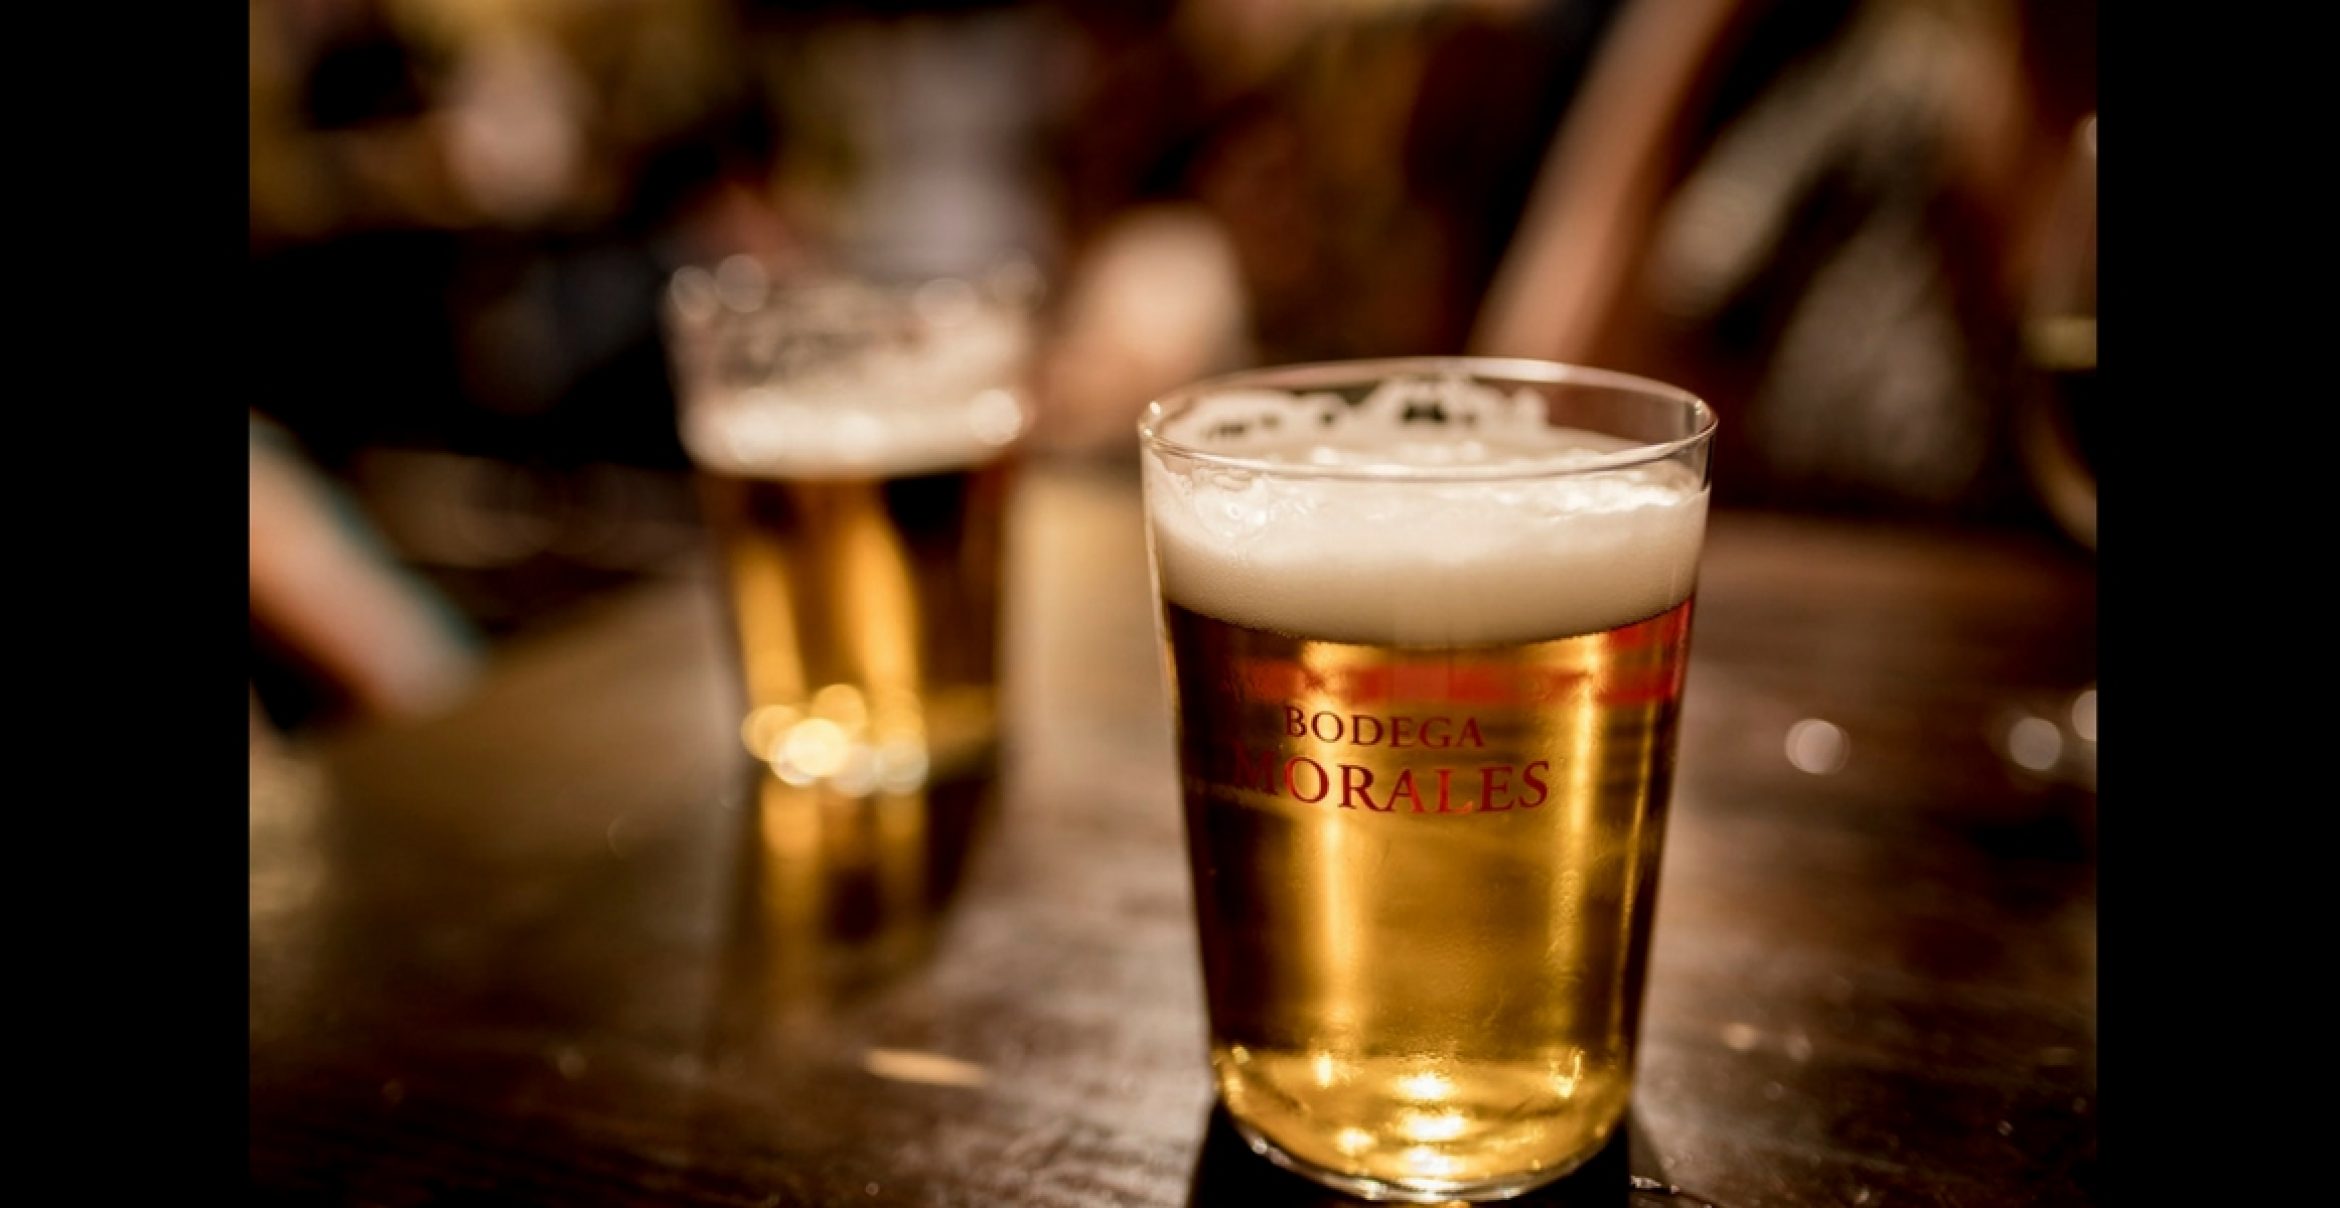 Stellenanzeige der Woche: Brauerei sucht engagierten Biertrinker